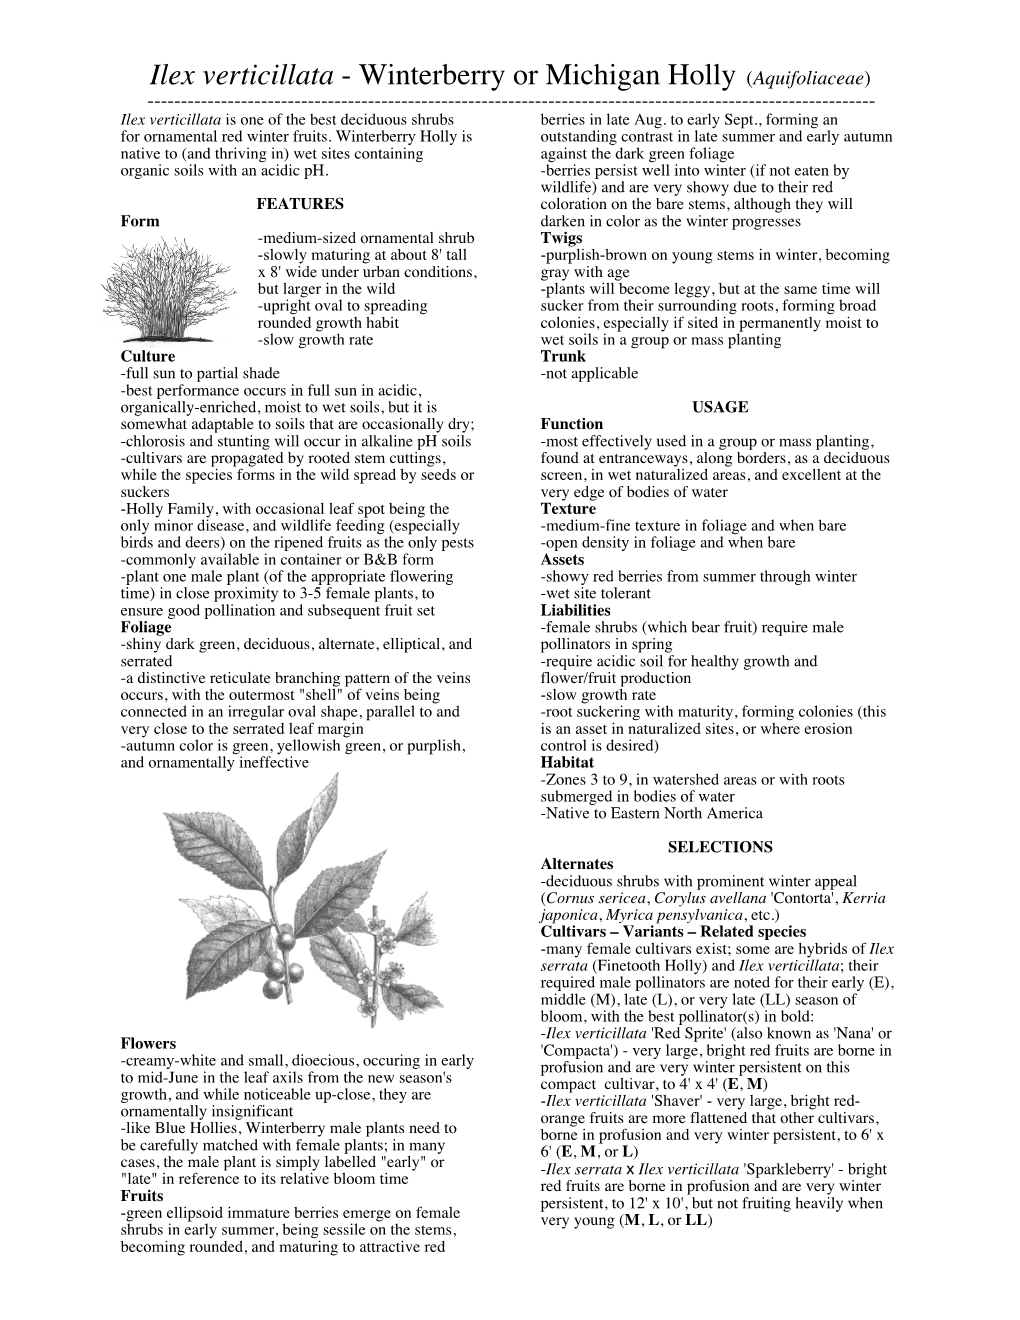 Ilex Verticillata - Winterberry Or Michigan Holly (Aquifoliaceae) ------Ilex Verticillata Is One of the Best Deciduous Shrubs Berries in Late Aug